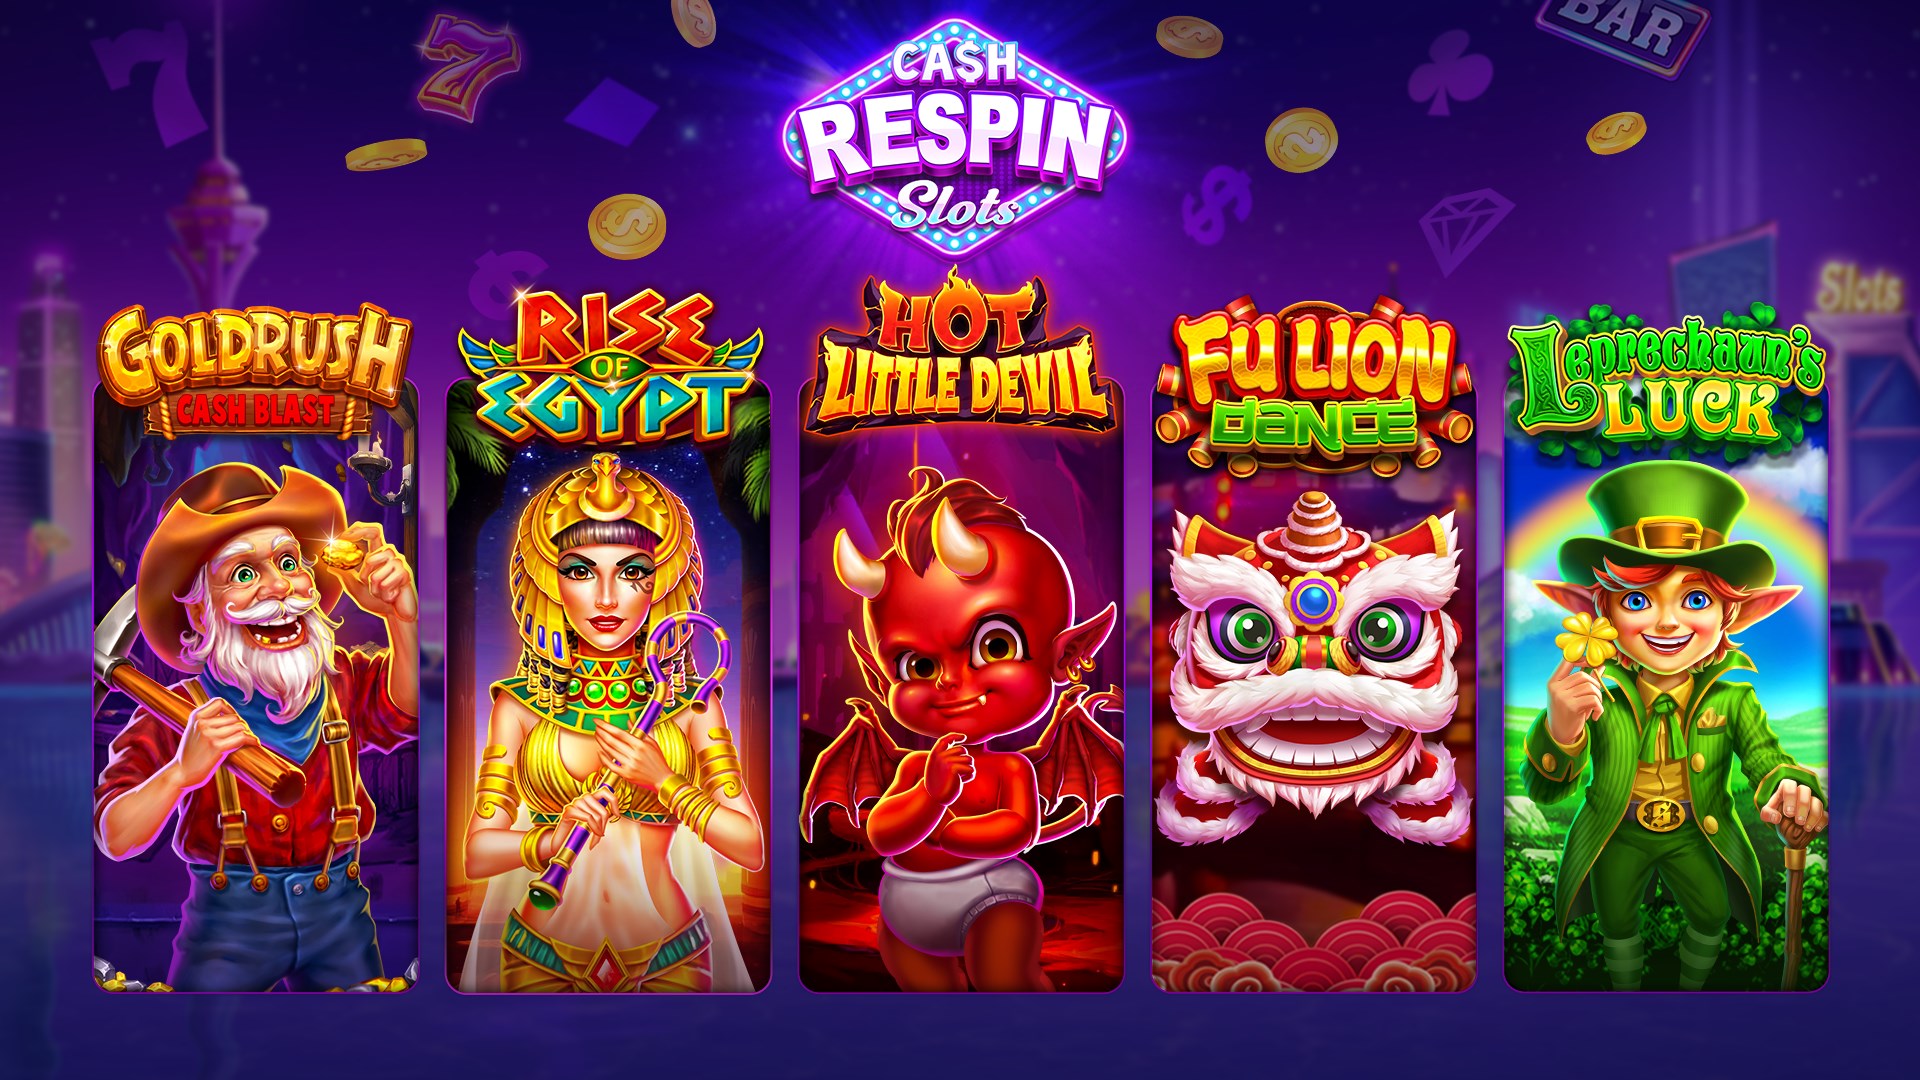 Get Cash Respin Slots Casino Games - Microsoft Store en-HK